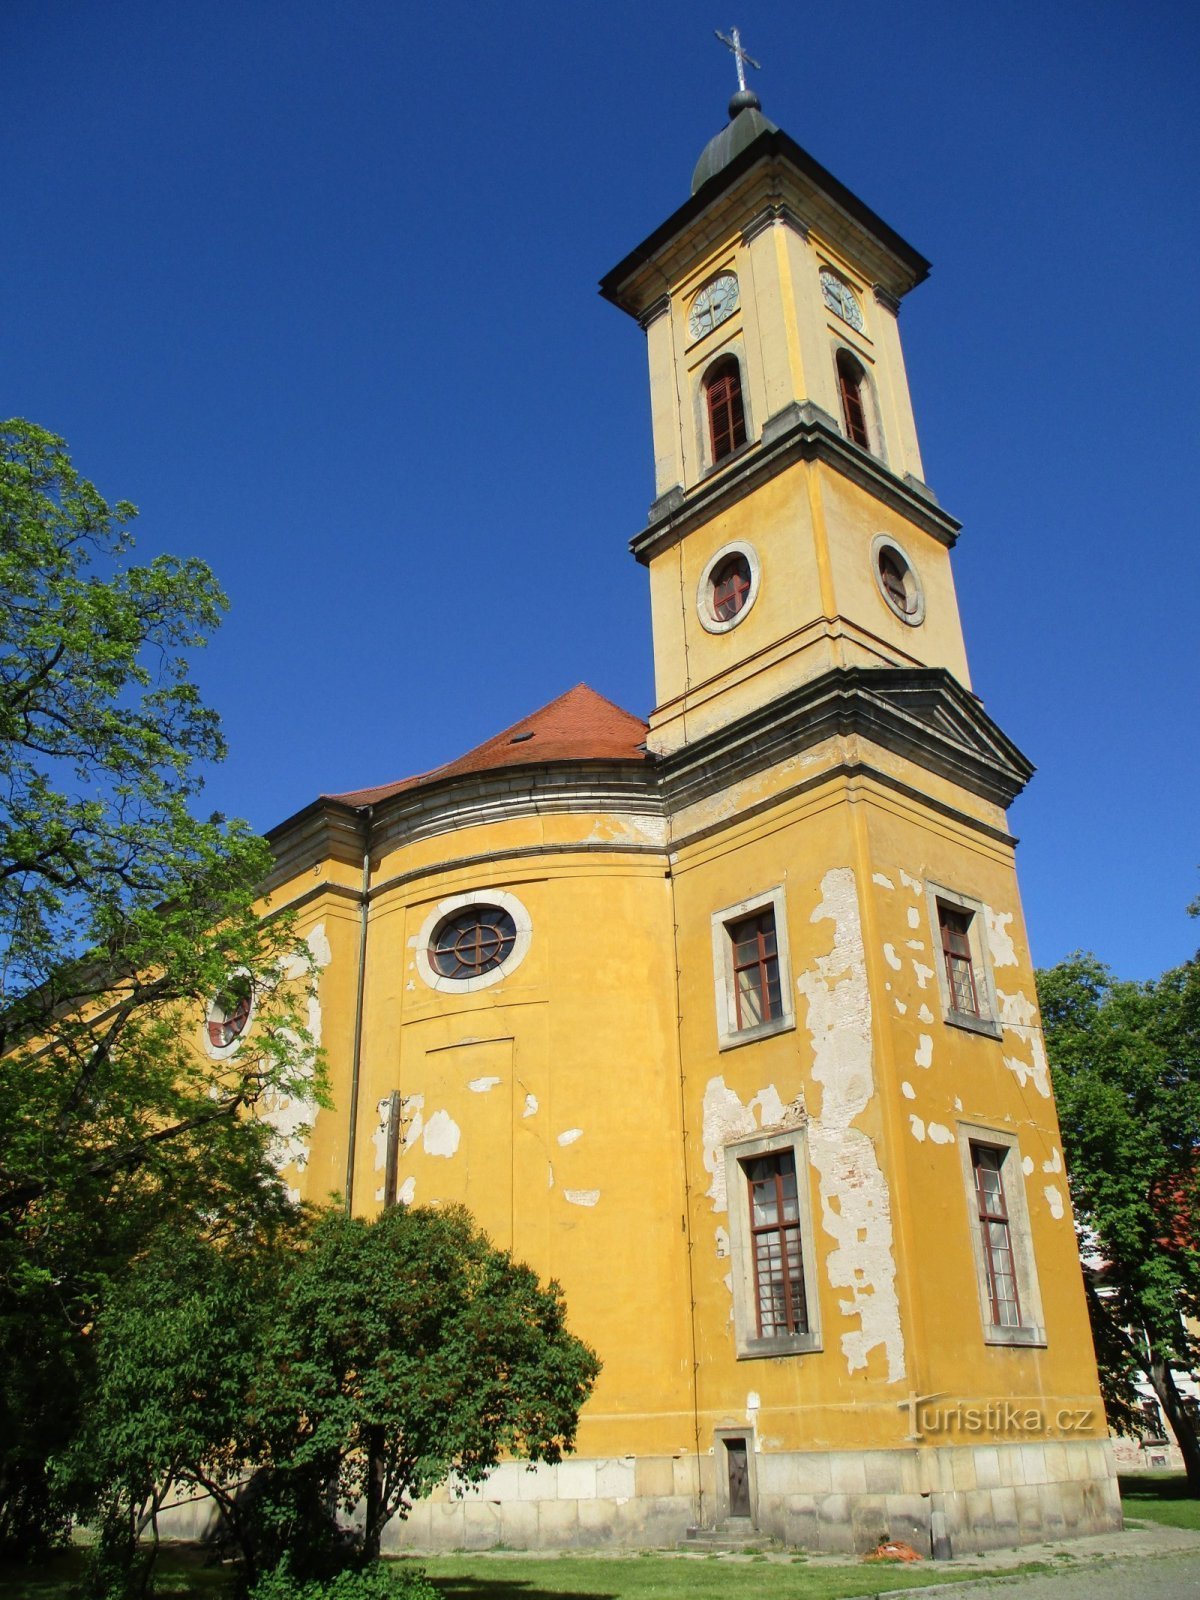 Nhà thờ Chúa Thăng thiên (Josefov, ngày 1.6.2020 tháng XNUMX năm XNUMX)